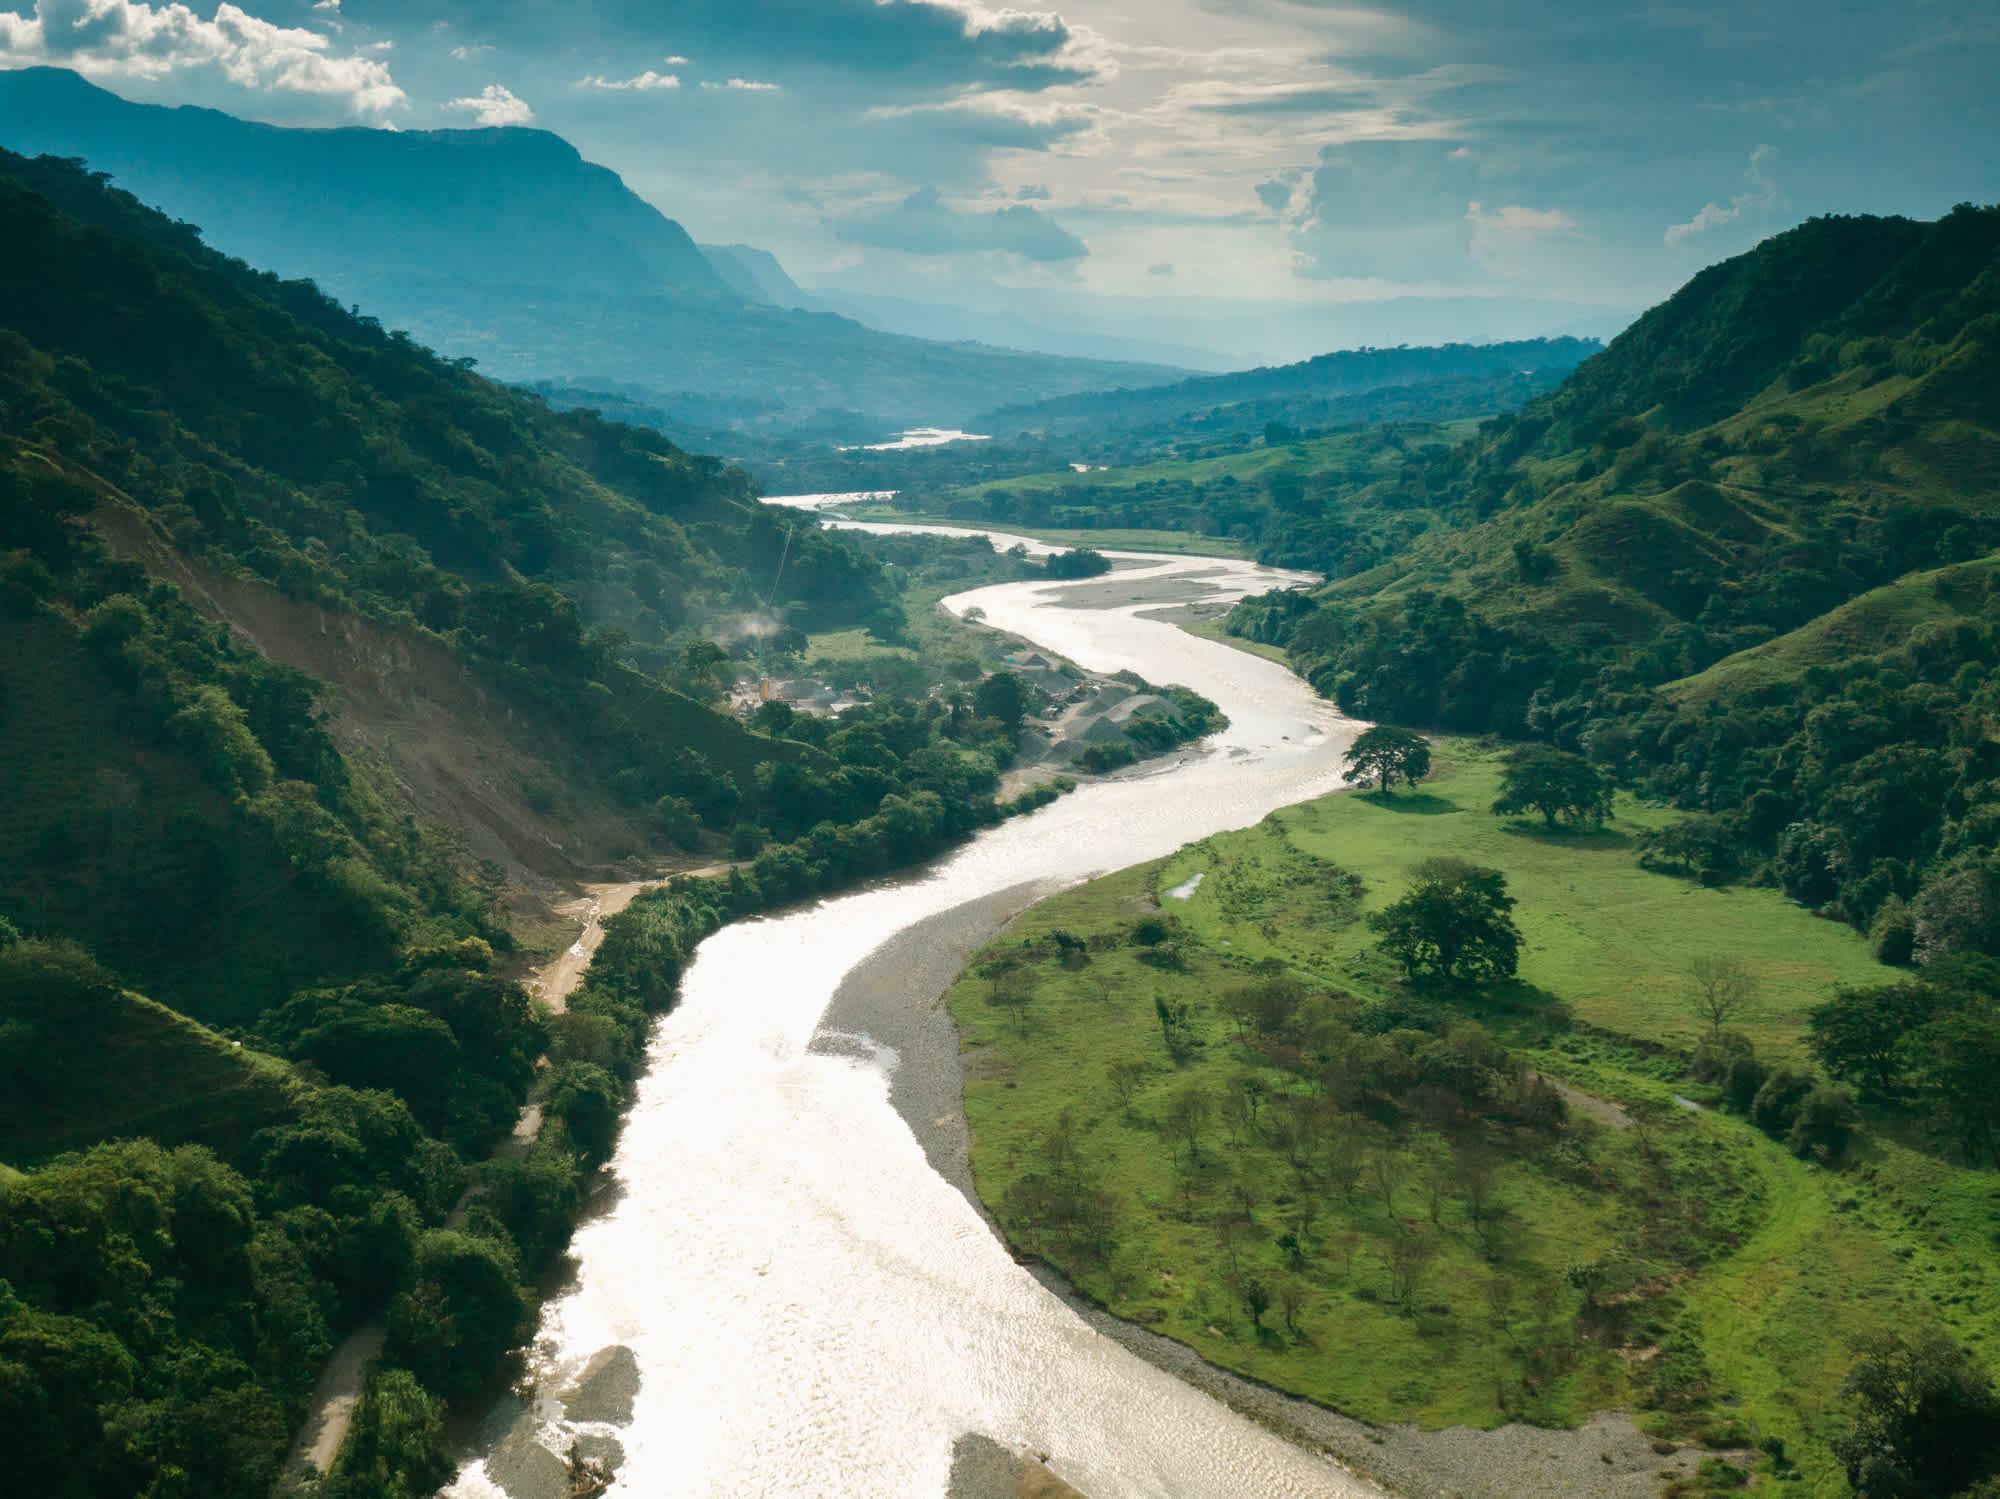 Luftaufnahme von Salamina, Caldas in den Anden und dem Fluss Magdalena